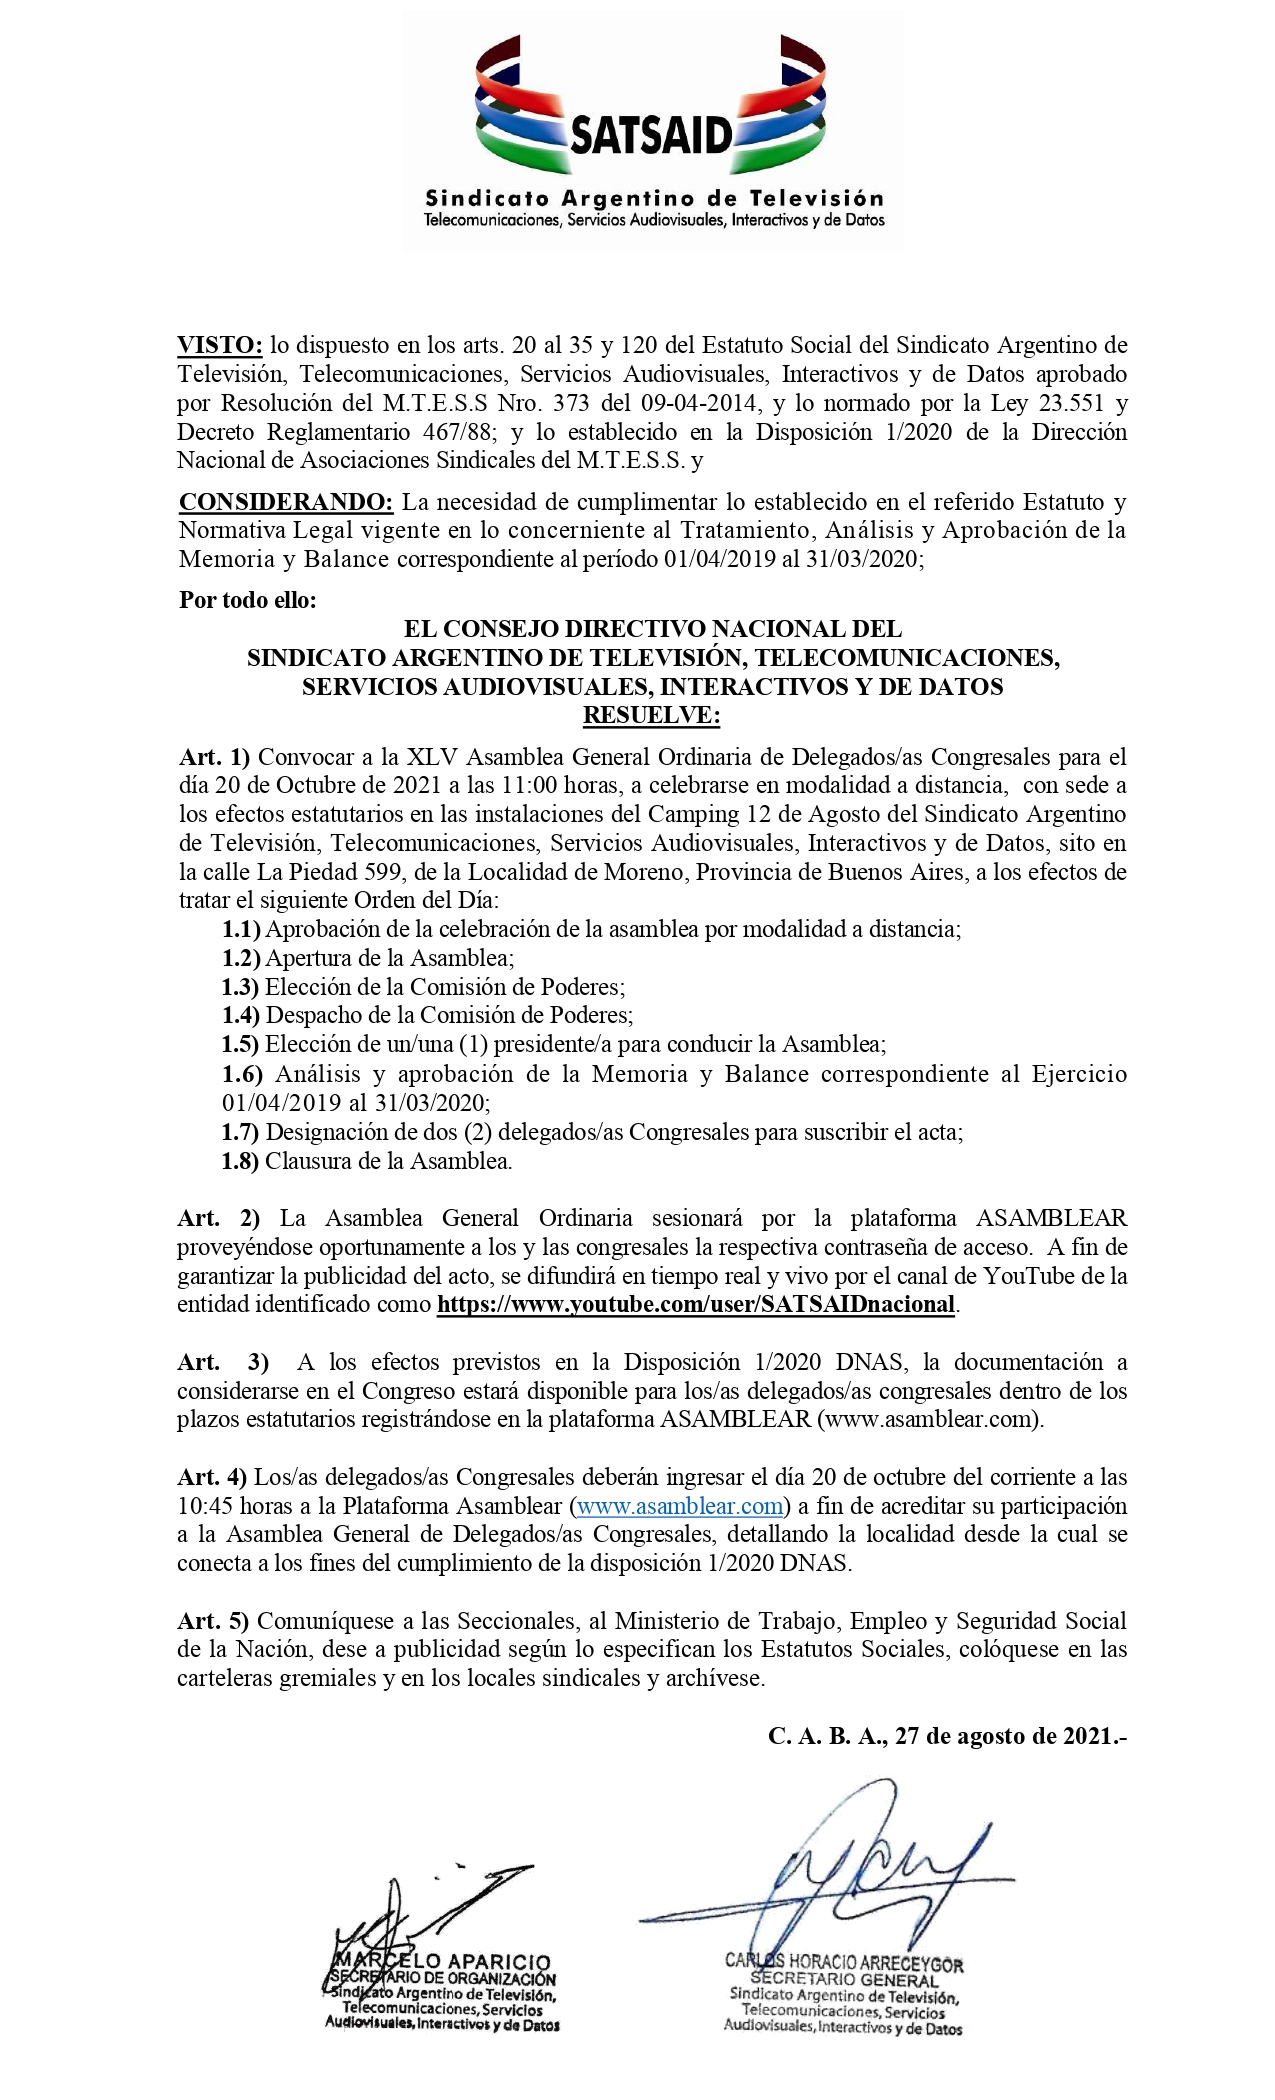 SATSAID CONVOCA A ASAMBLEA DE DELEGADXS CONGRESALES EL 20 DE OCTUBRE